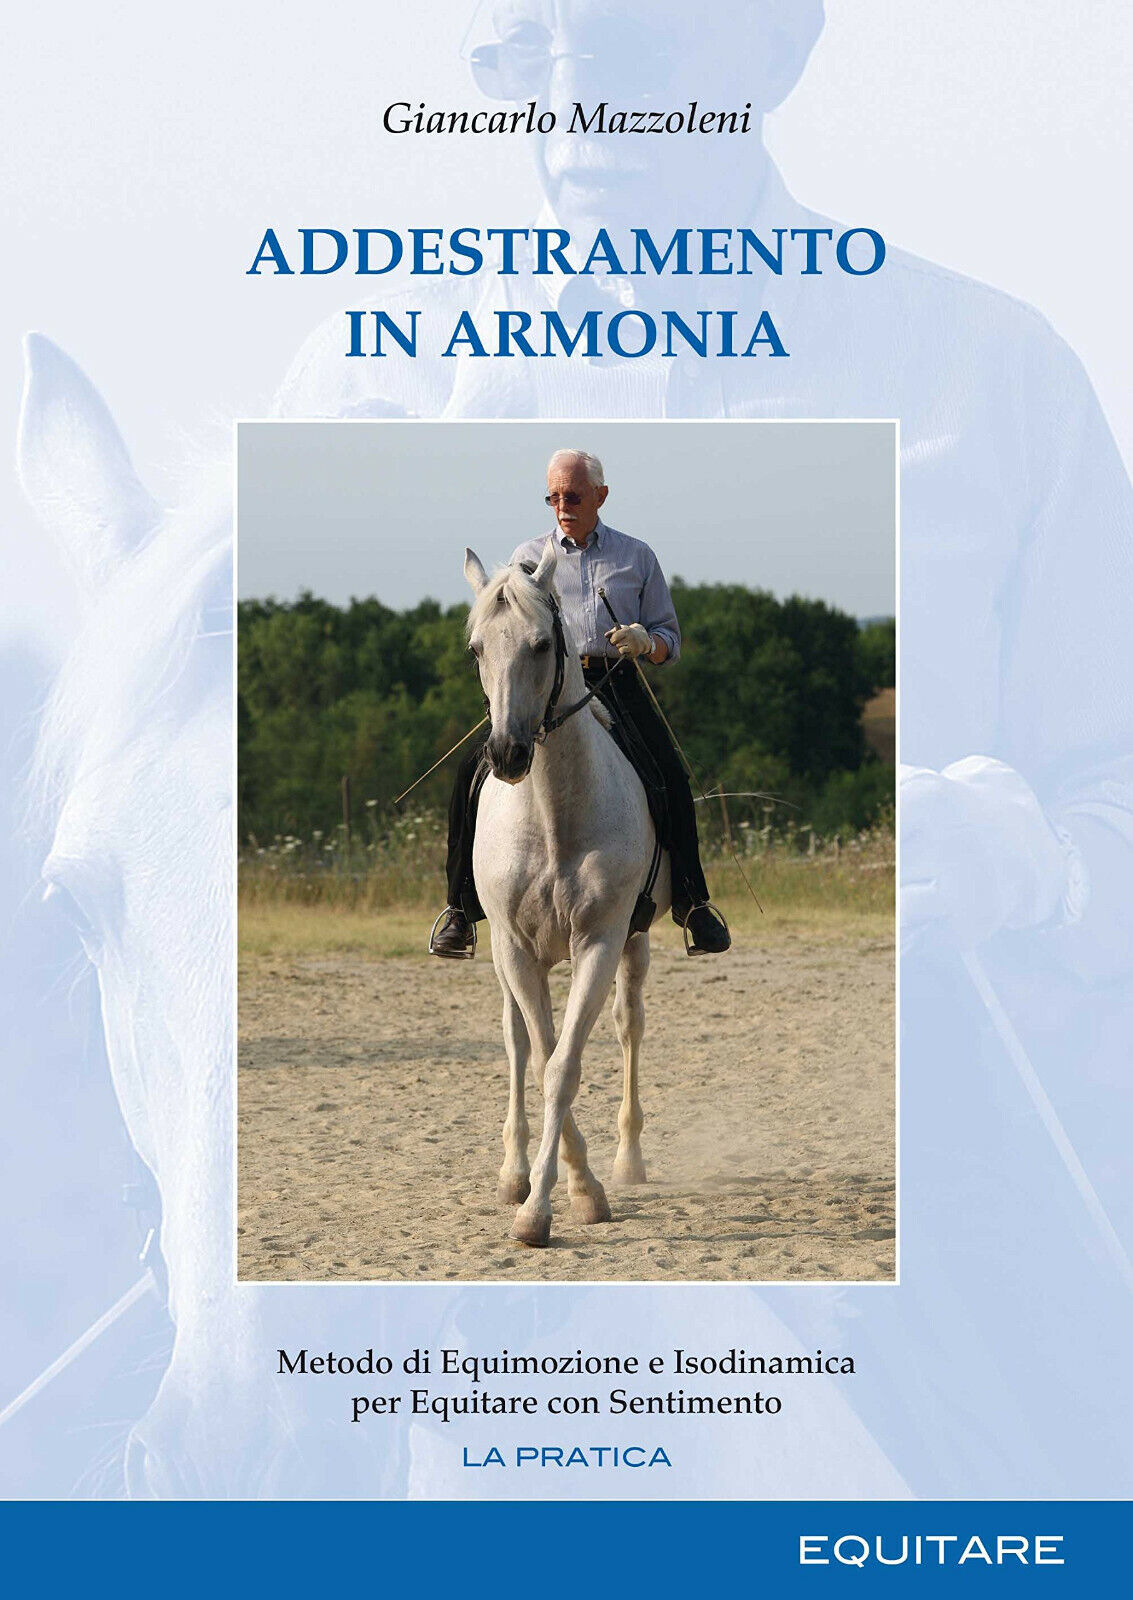 Addestramento in armonia - Giancarlo Mazzoleni - Equitare,2016 libro usato